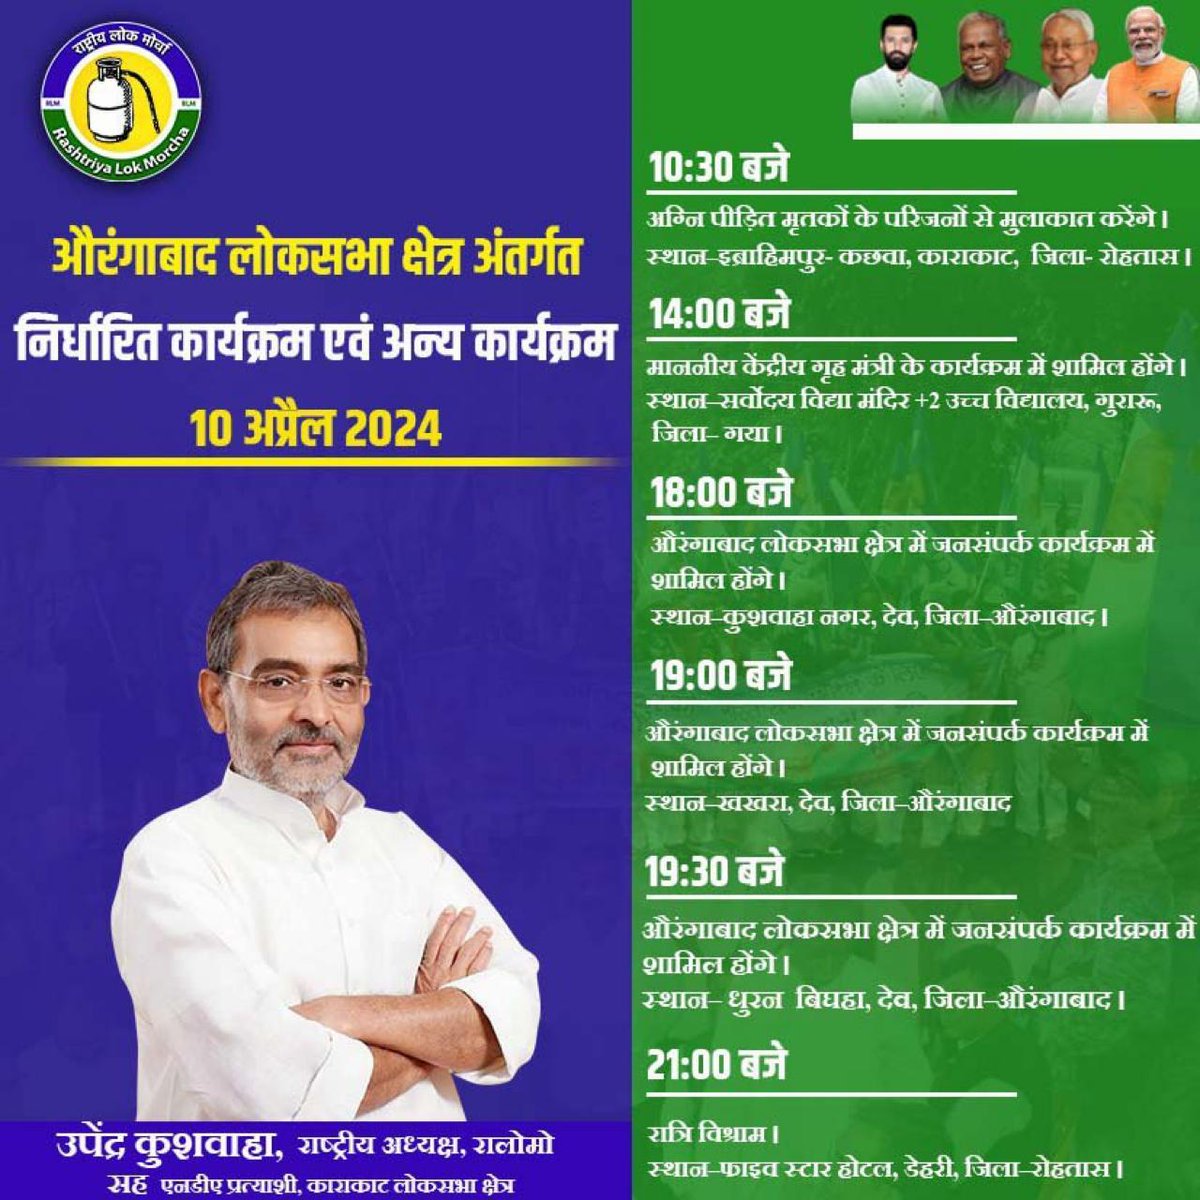 पार्टी के राष्ट्रीय अध्यक्ष श्री उपेंद्र कुशवाहा जी का आज 10 अप्रैल 2024 को लोक सभा निर्वाचन क्षेत्र अंतर्गत निर्धारित कार्यक्रम एवं अन्य कार्यक्रम।